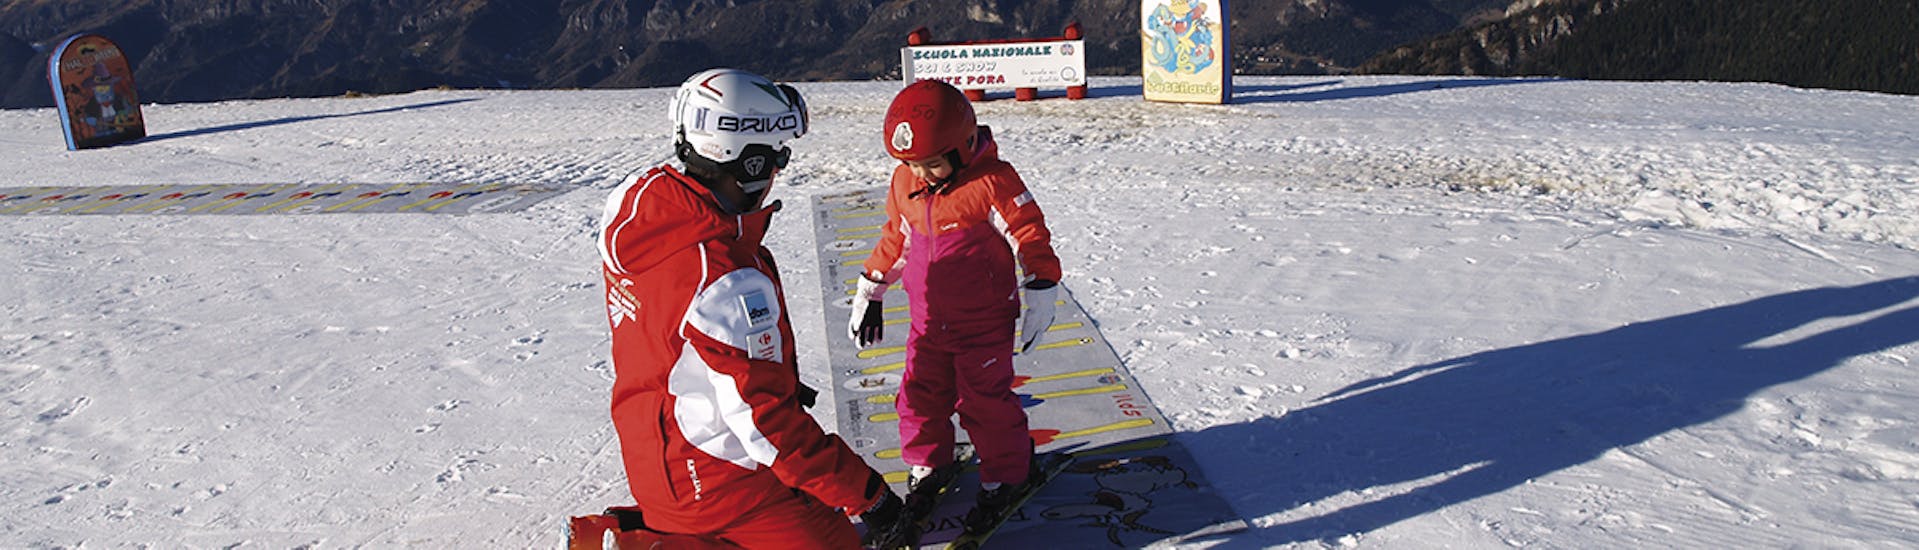 Clases de esquí privadas para niños a partir de 3 años para todos los niveles.